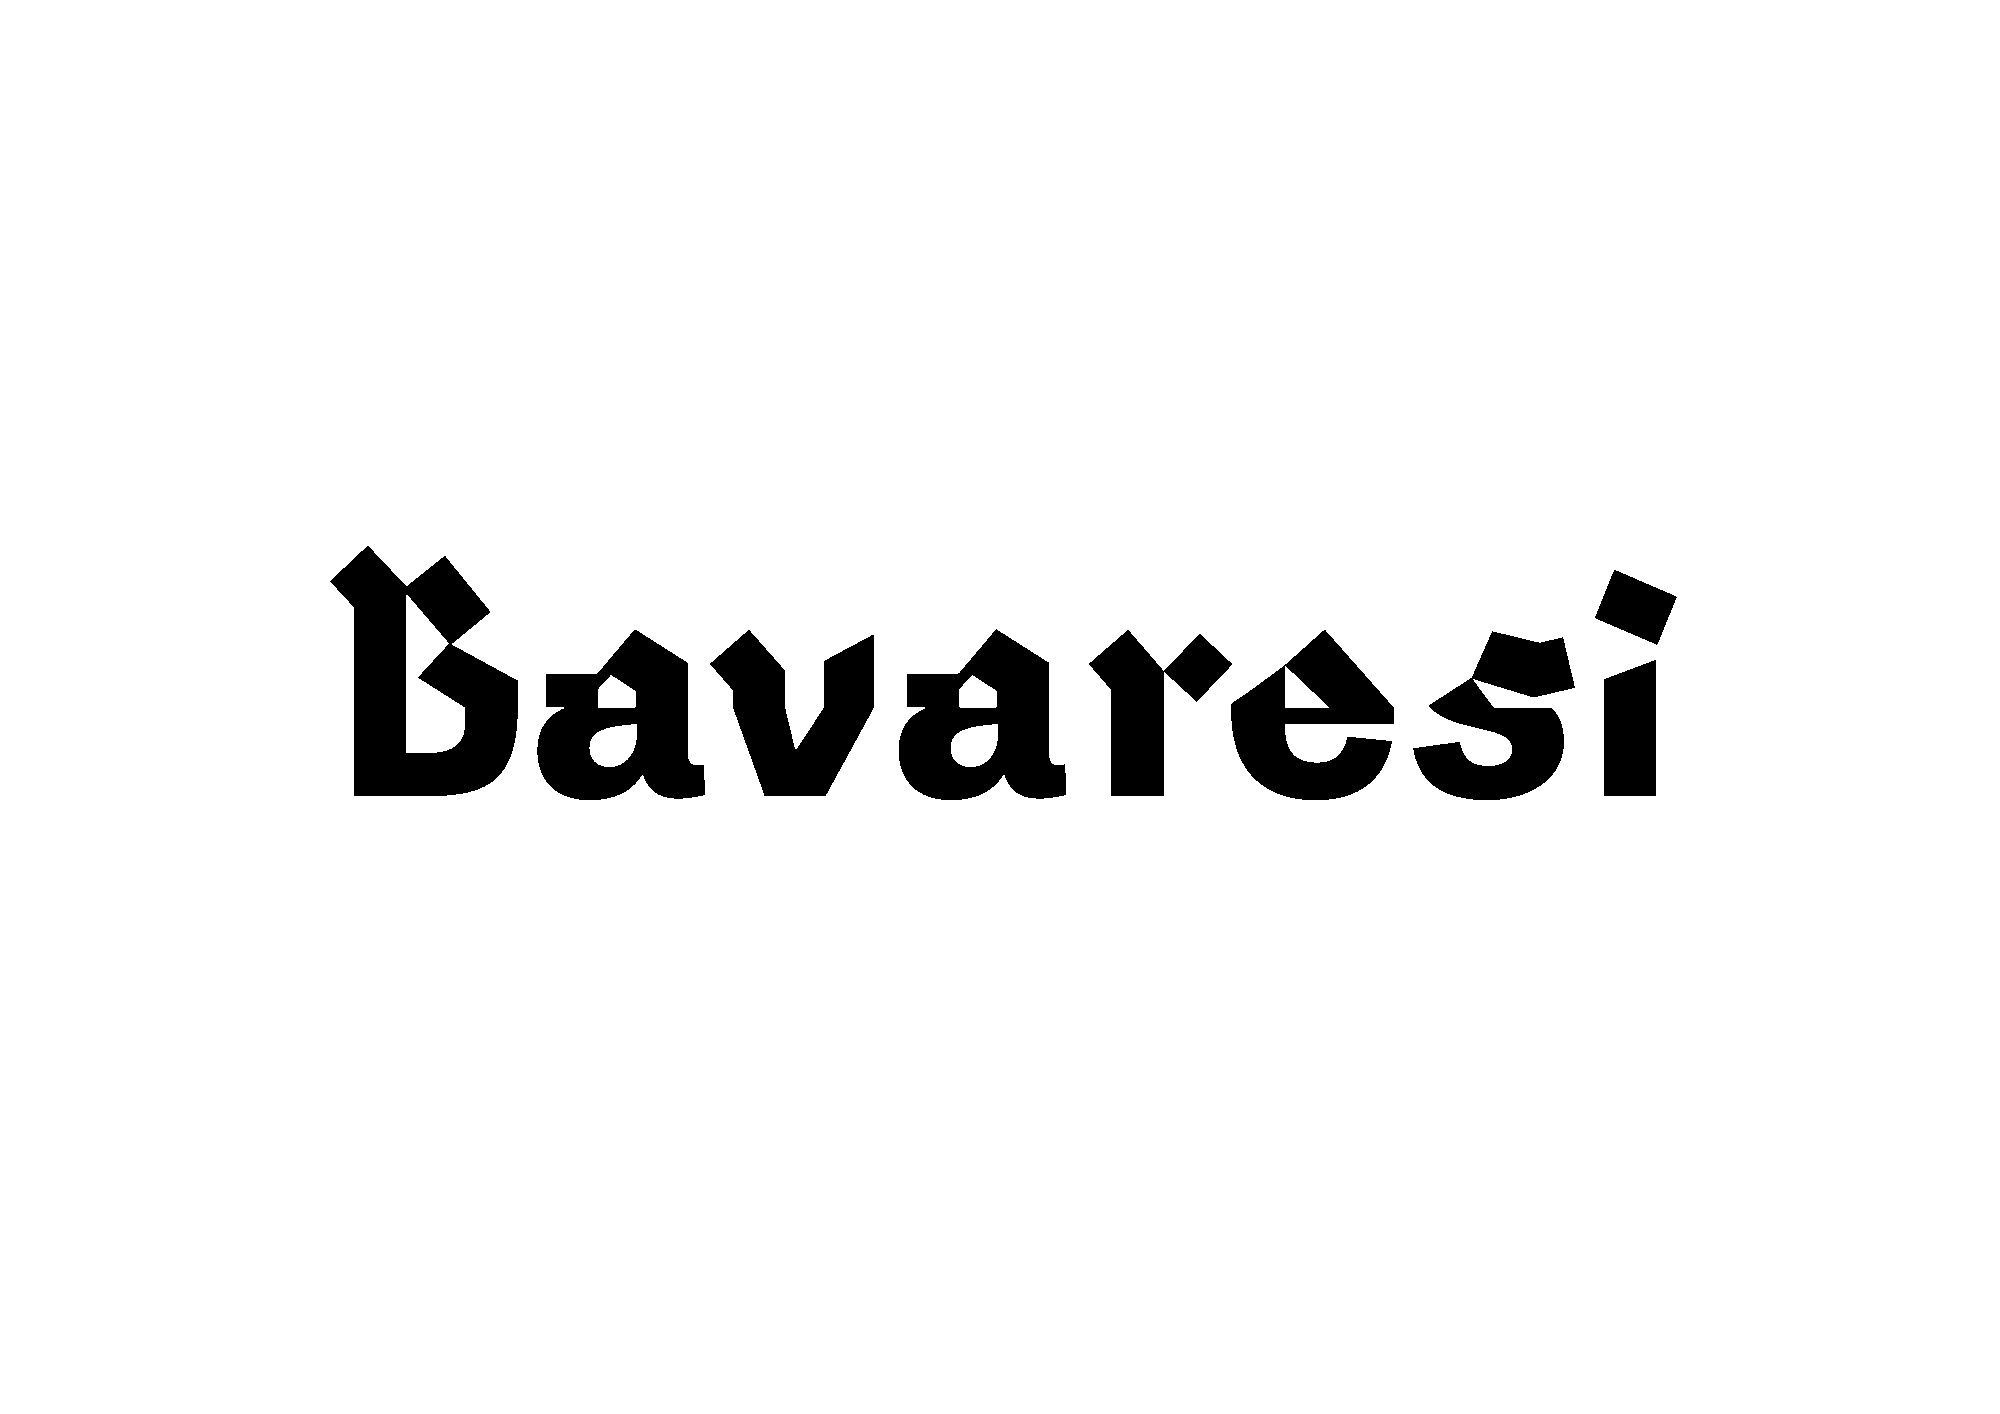 Bavaresi